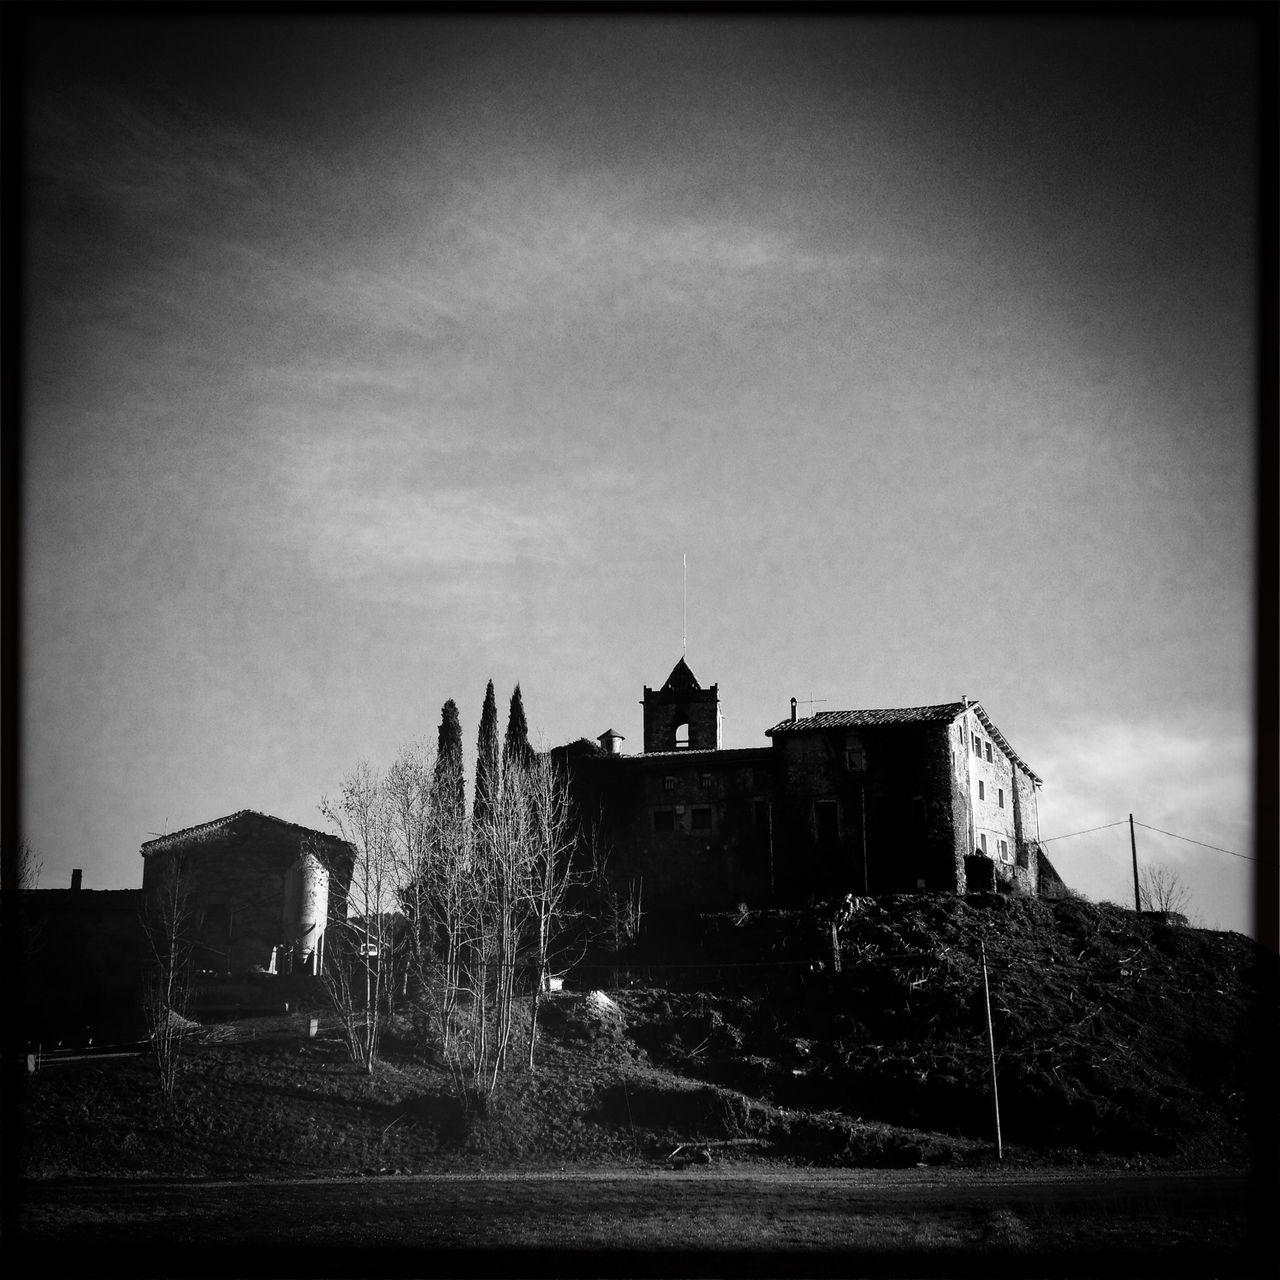 Schwarz-Weiß-Bild einer katalanischen Kirche ein bisschen Underfoot aufgenommen im Gegenlicht. Dunkle Vignette an den oberen Bildecken. Kahle Bäume geleiten den Blick.